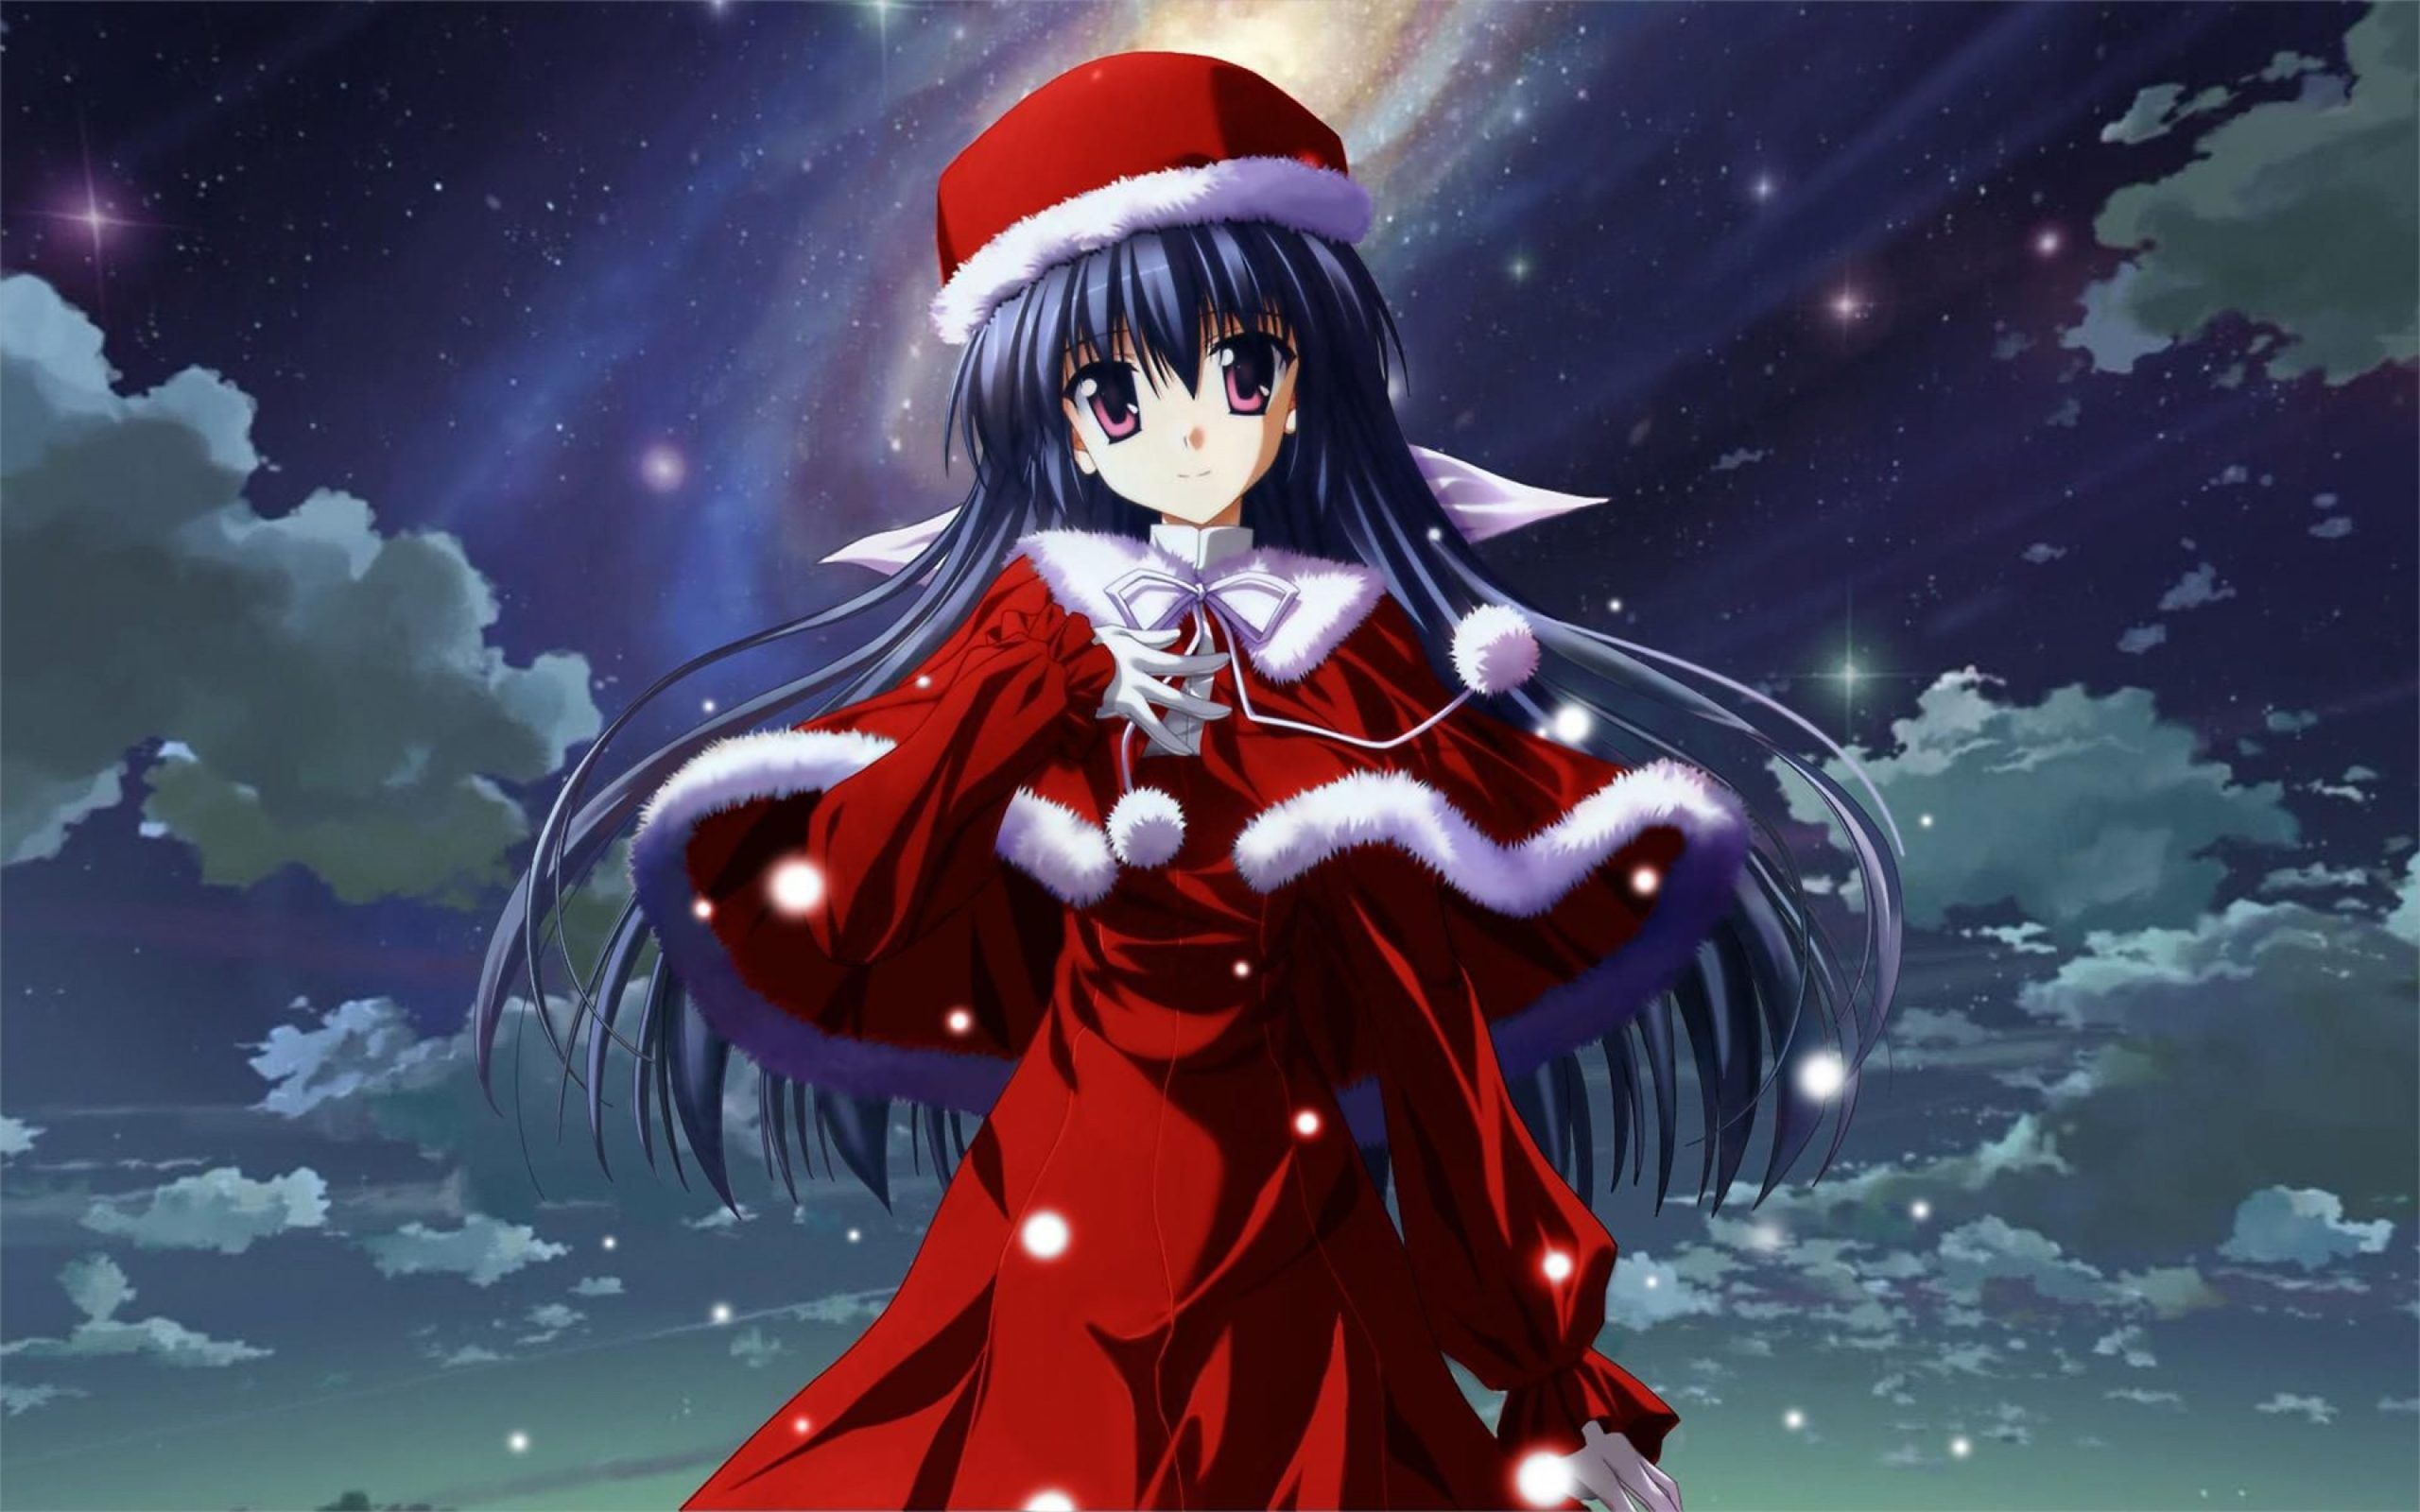 29+] Sao Anime Christmas Wallpapers - WallpaperSafari